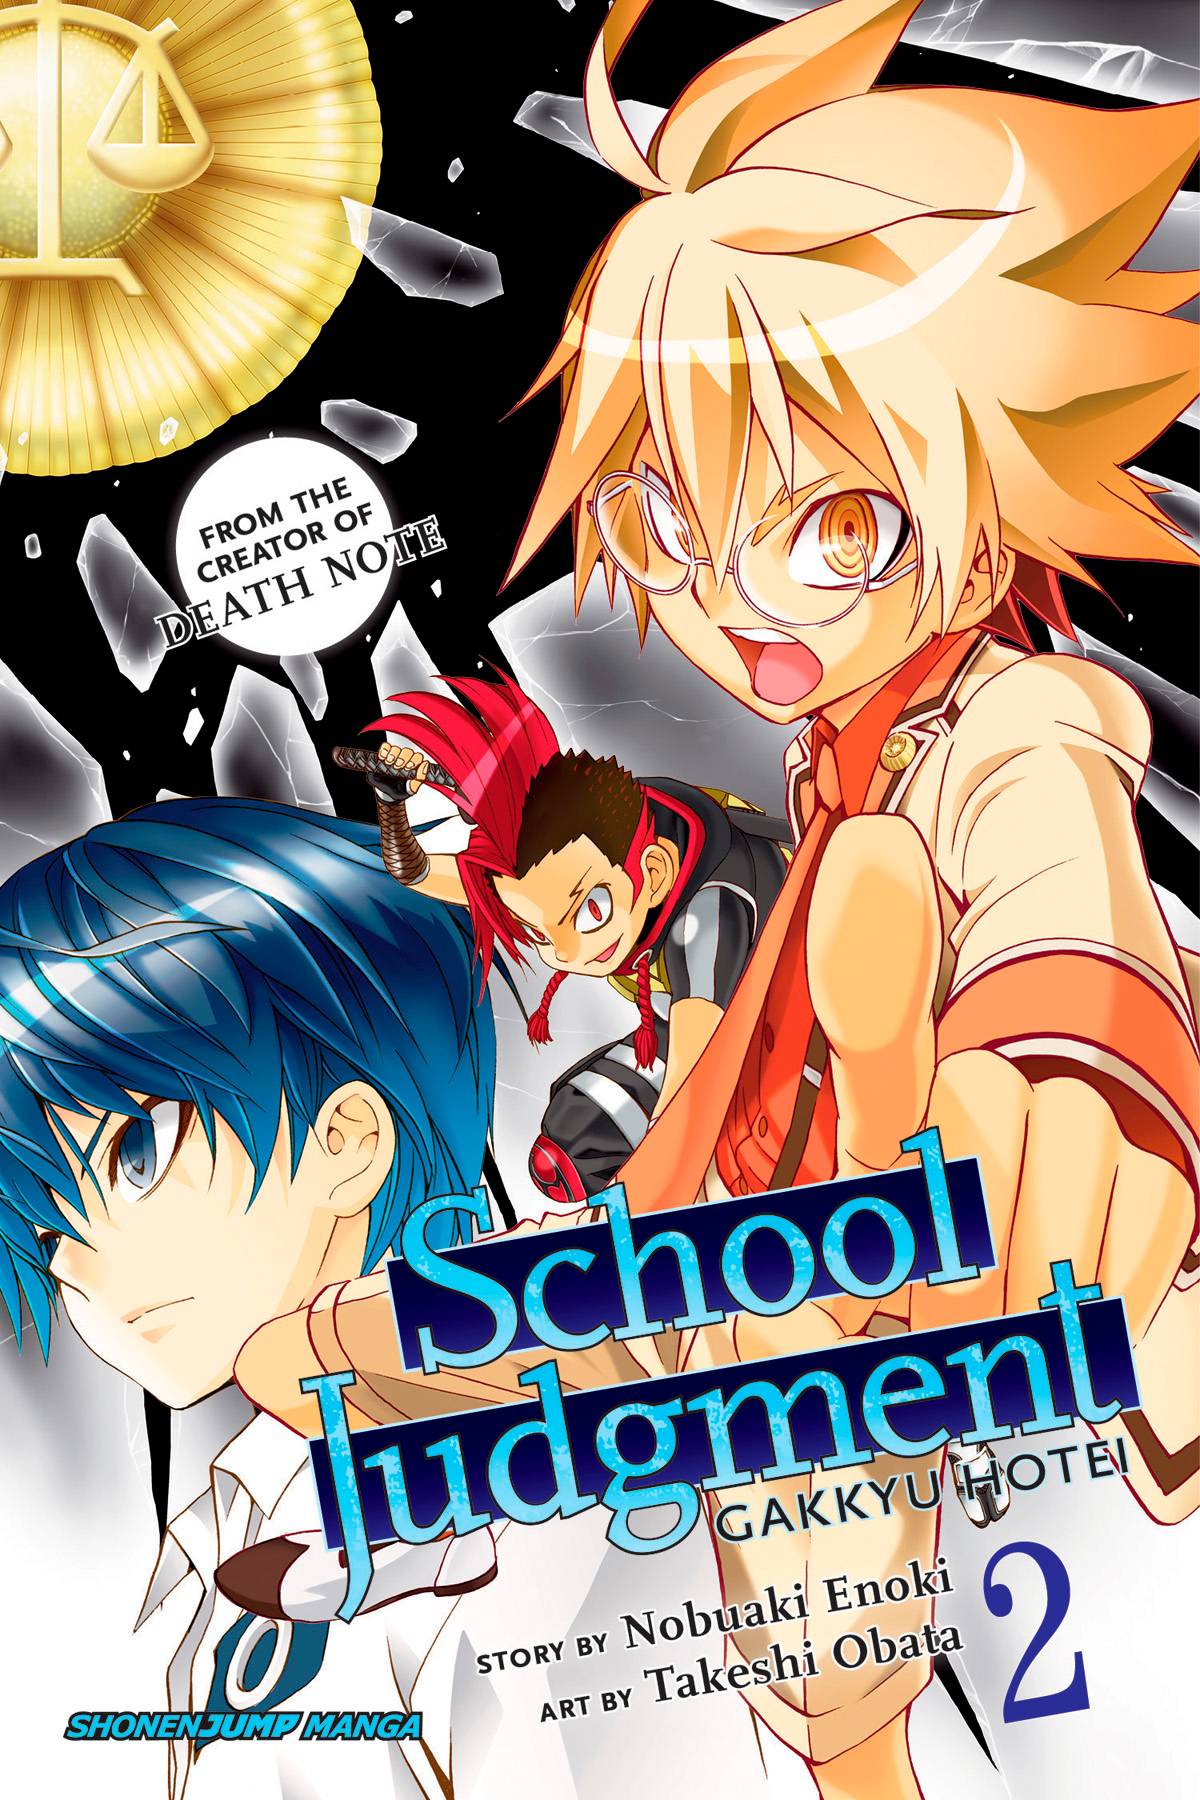 School Judgment Gakkyu Hotei Manga Volume 2